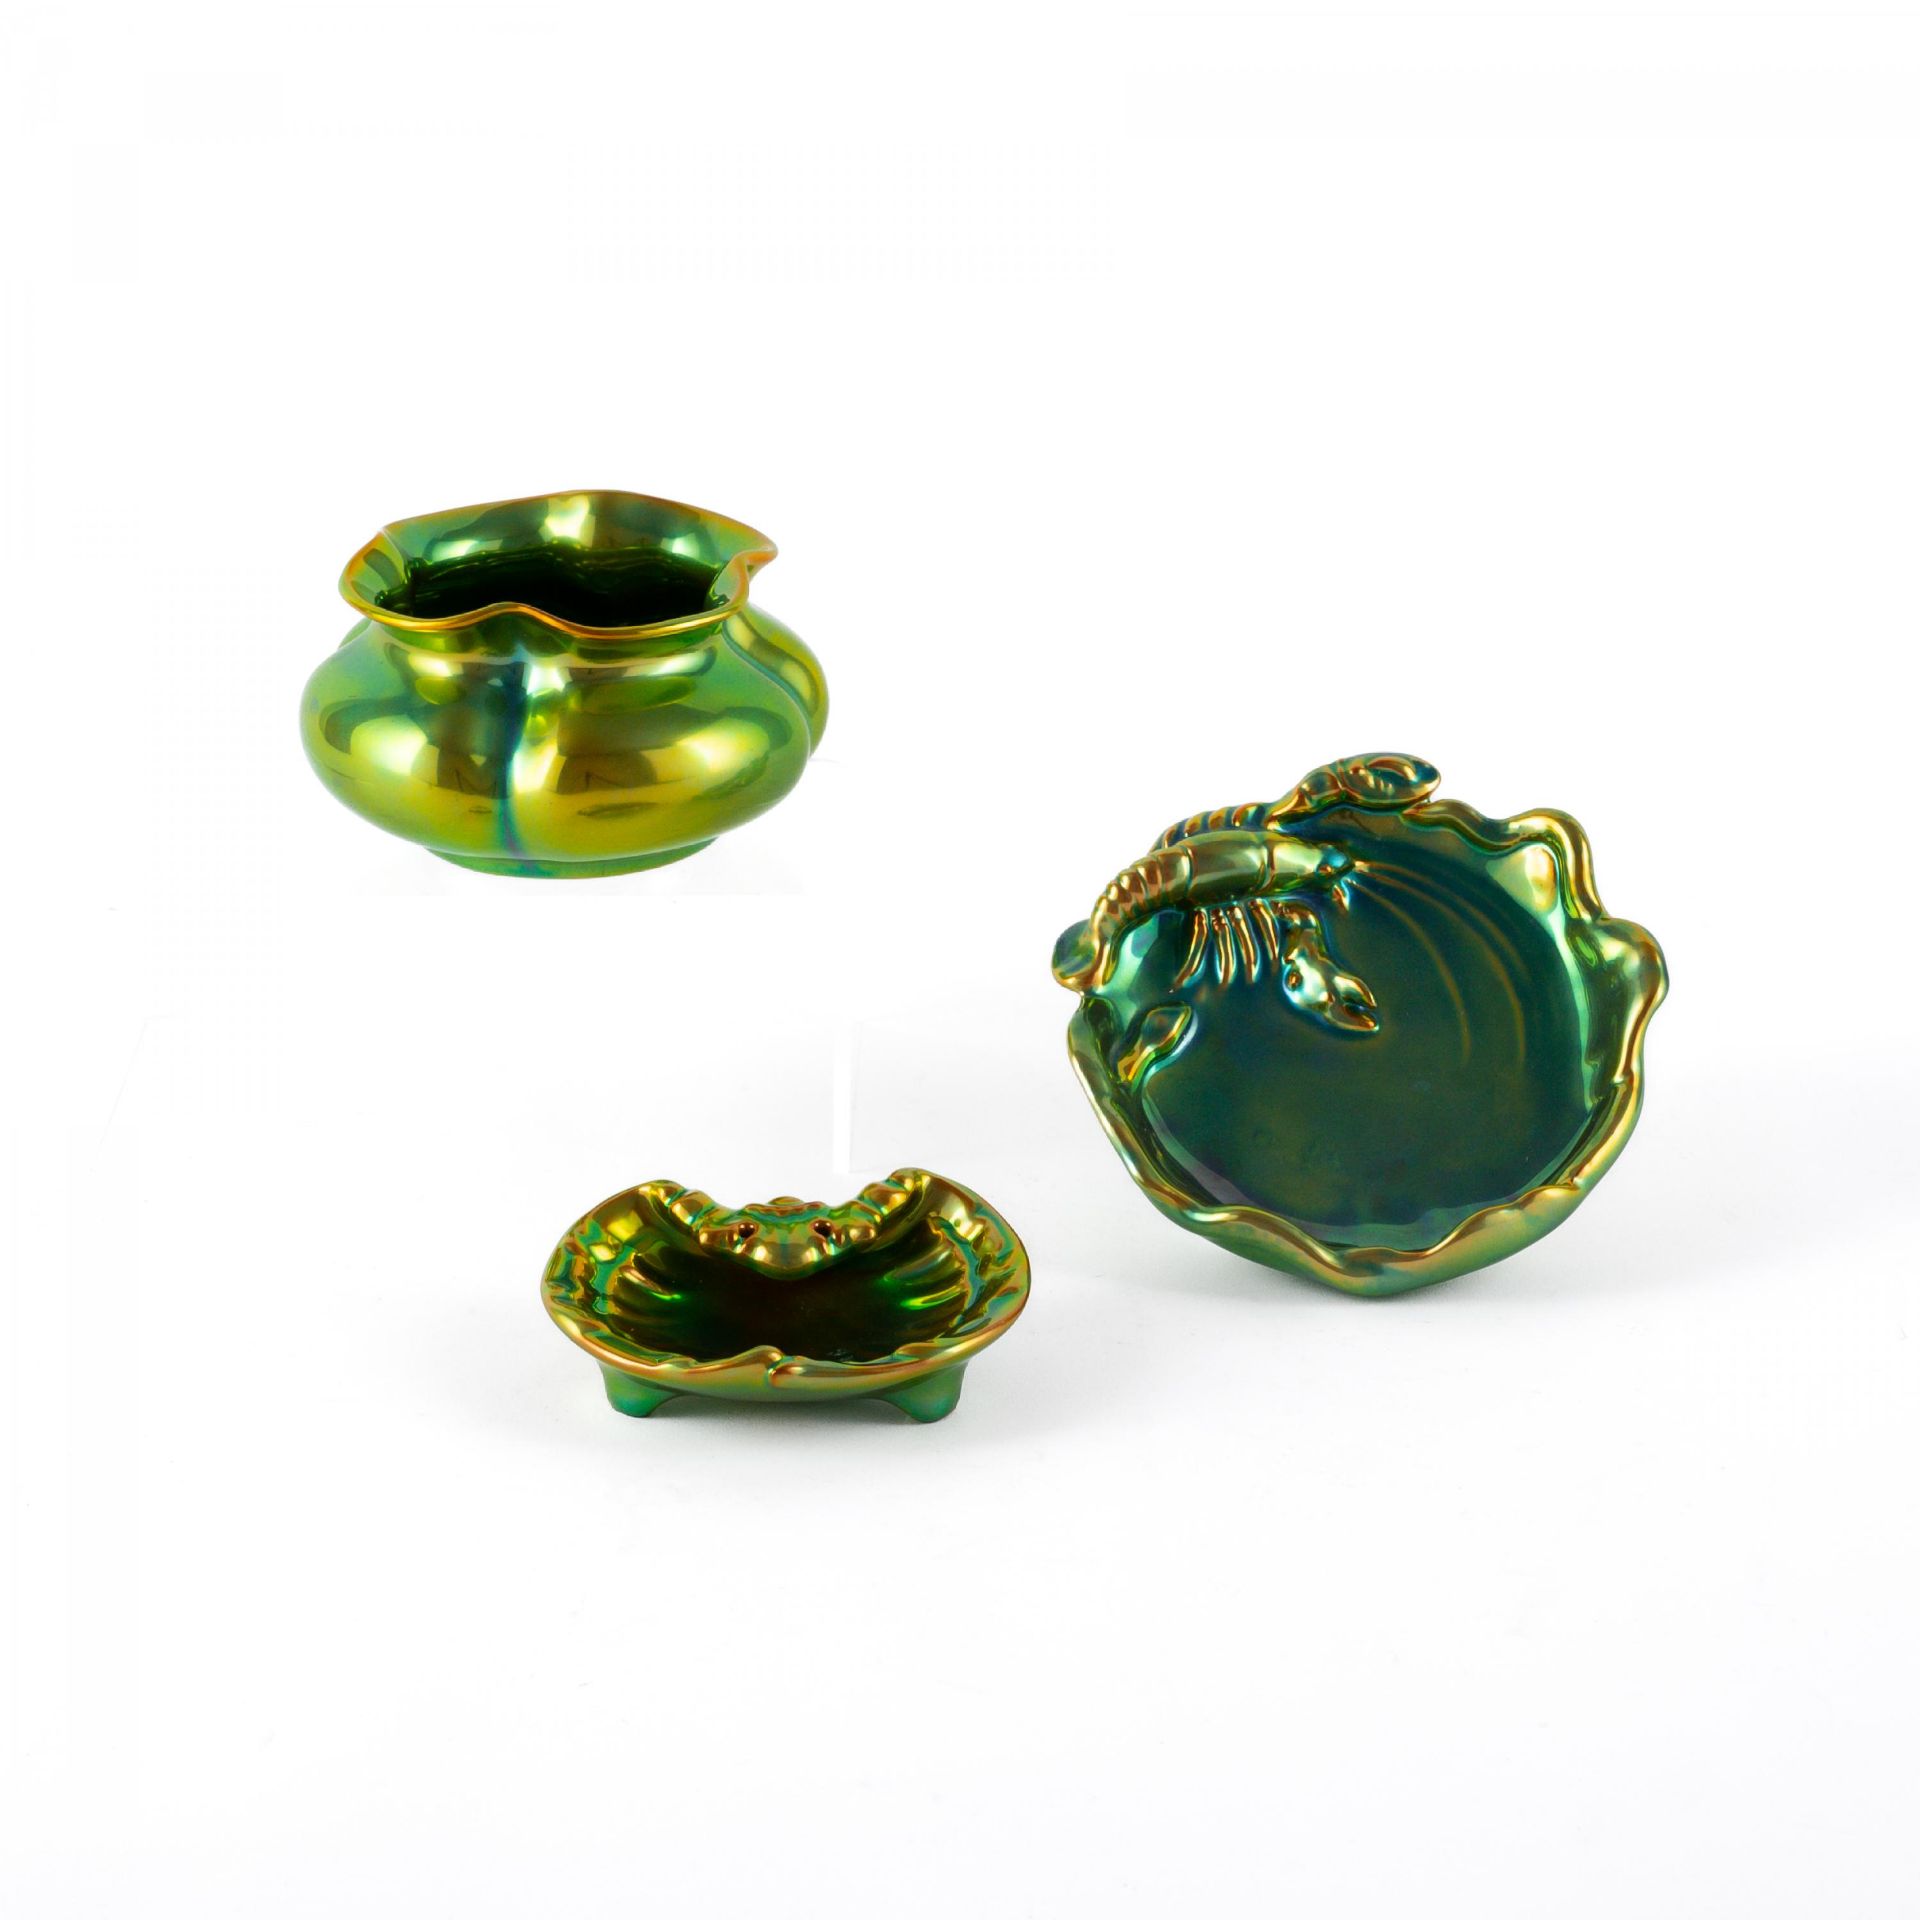 Gruppe von drei irisierend grünen Porzellanschalen